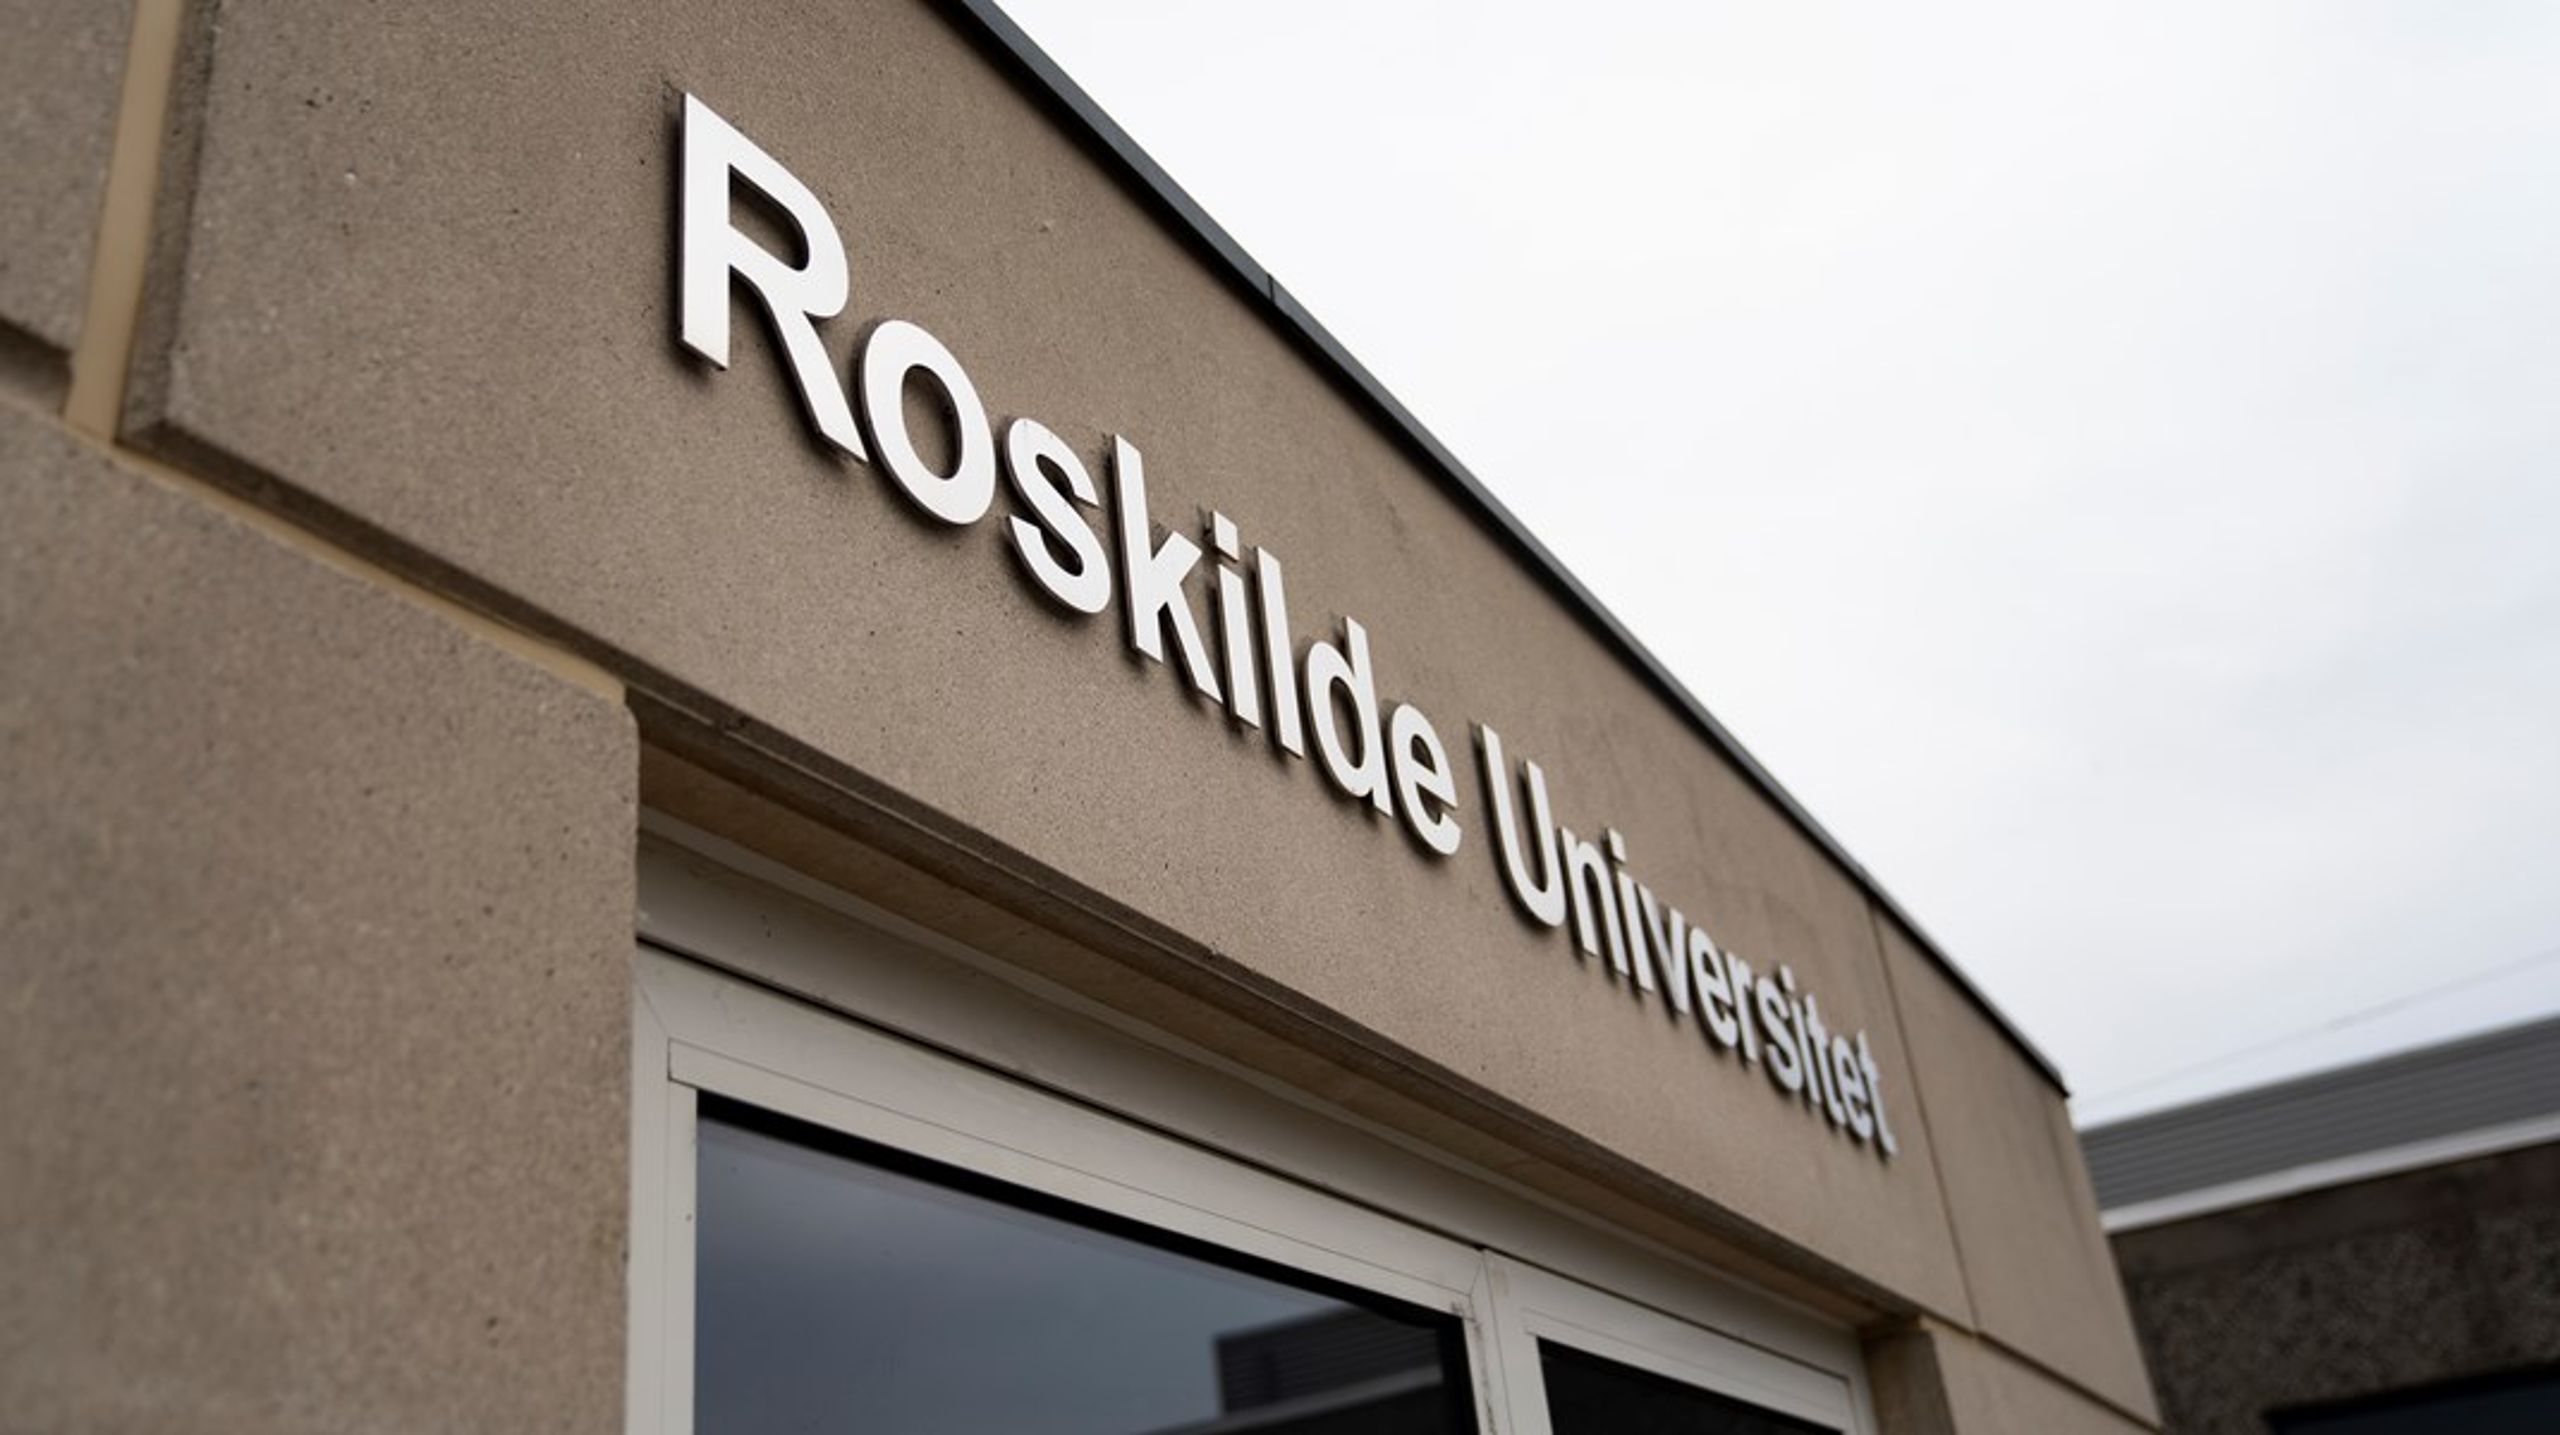 Sammen med de tre øvrige dekaner og rektoratet kommer Morten Frederiksen til at udgøre den øverste ledelse af Roskilde Universitet.